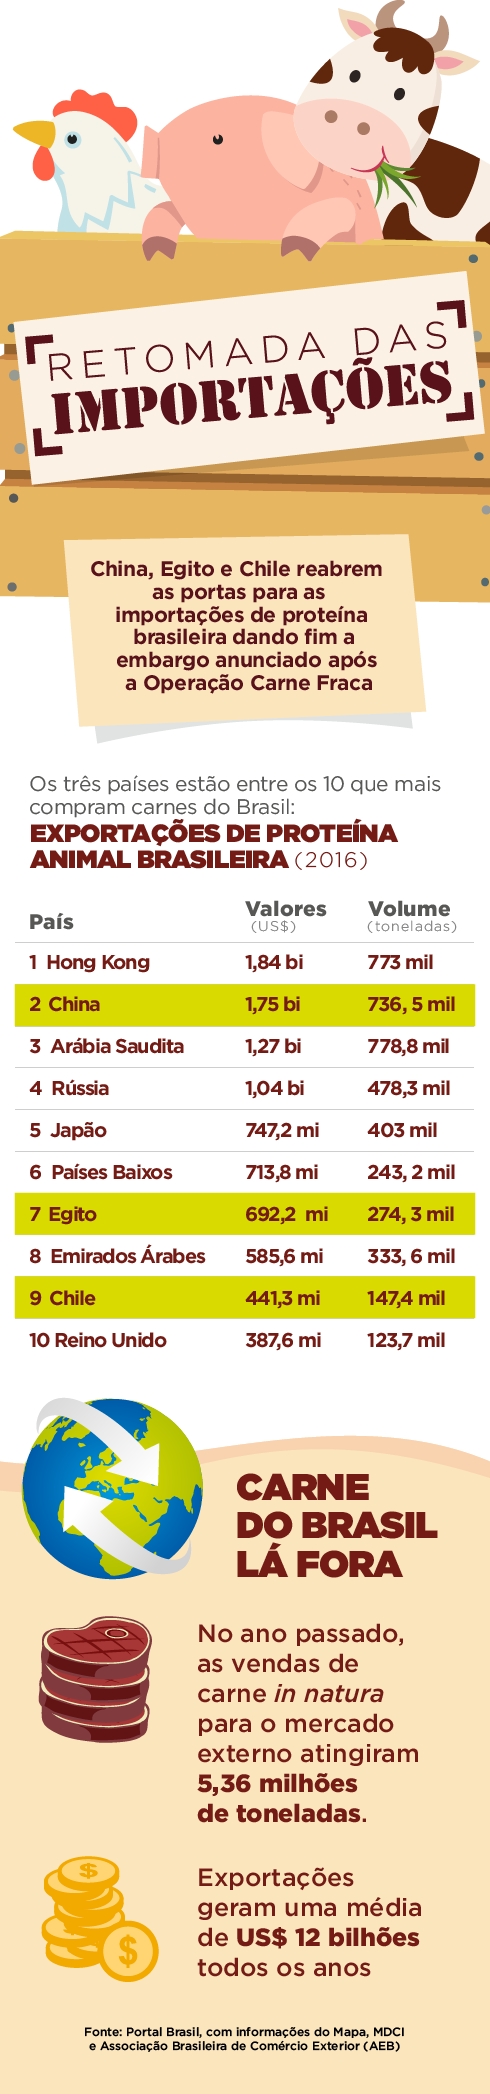 Confira os valores das exportações de carne feita à China, Egito e Chile